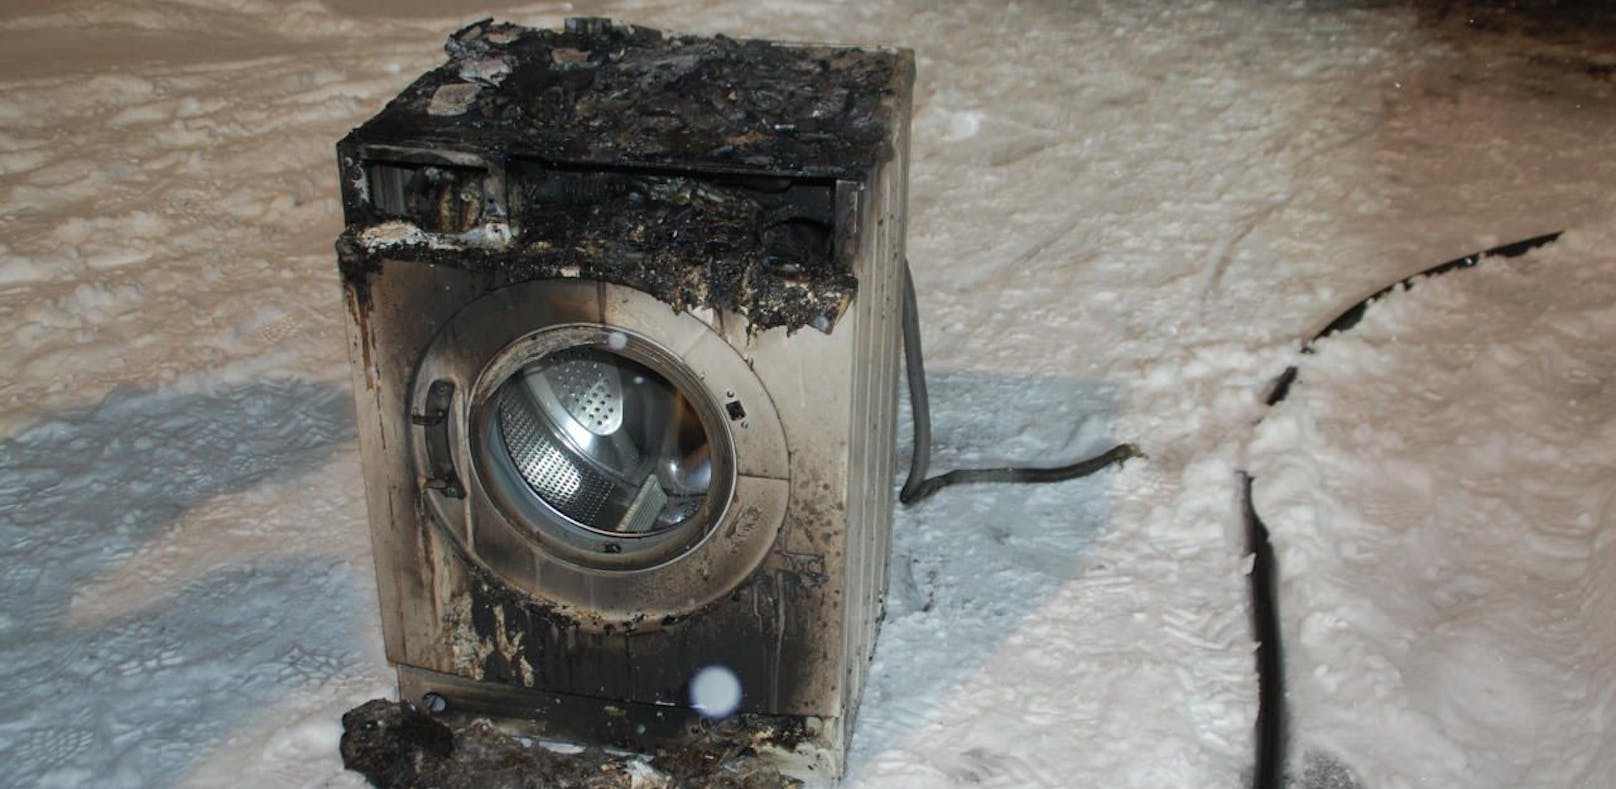 Waschmaschine löste Brand in Wohnhaus aus